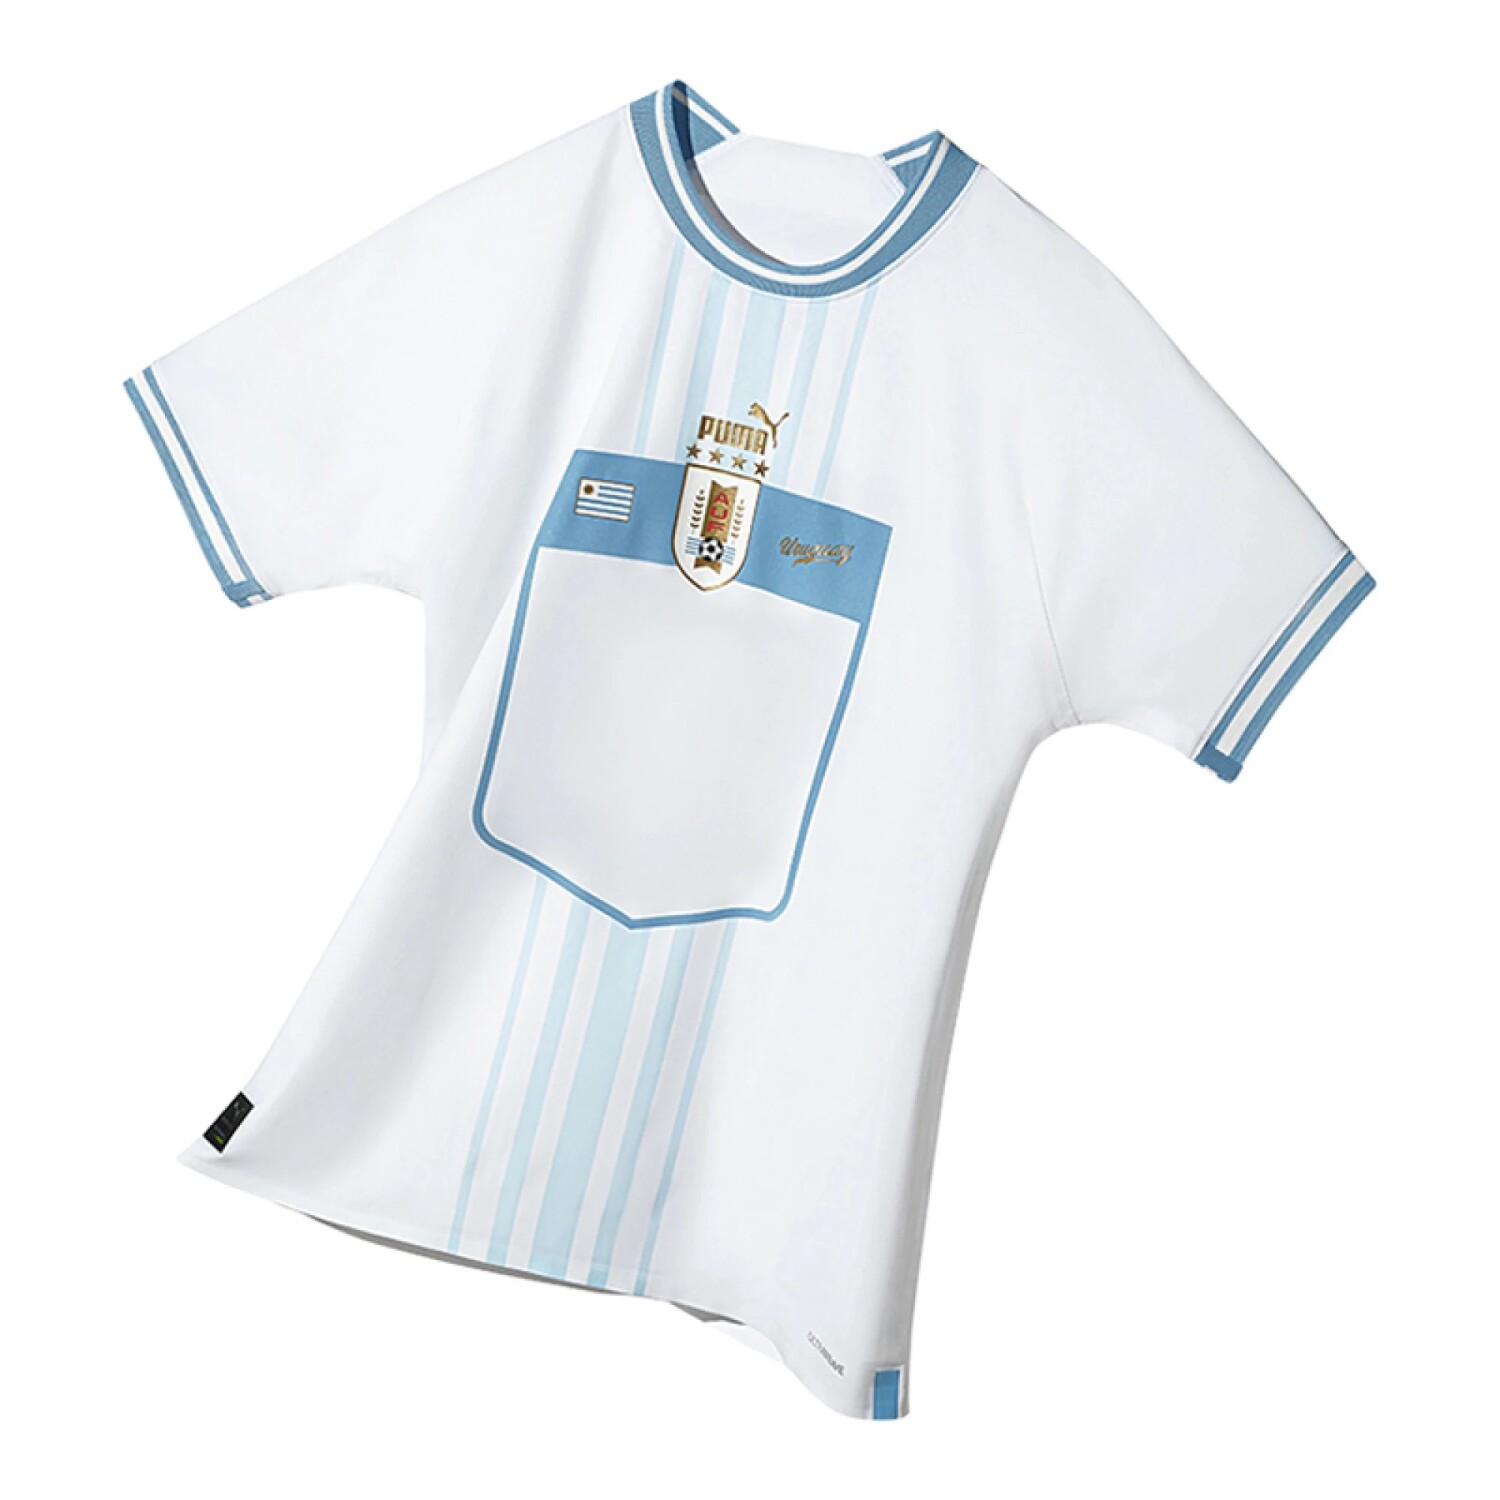 Uruguay 1924 Camiseta Retro Fútbol